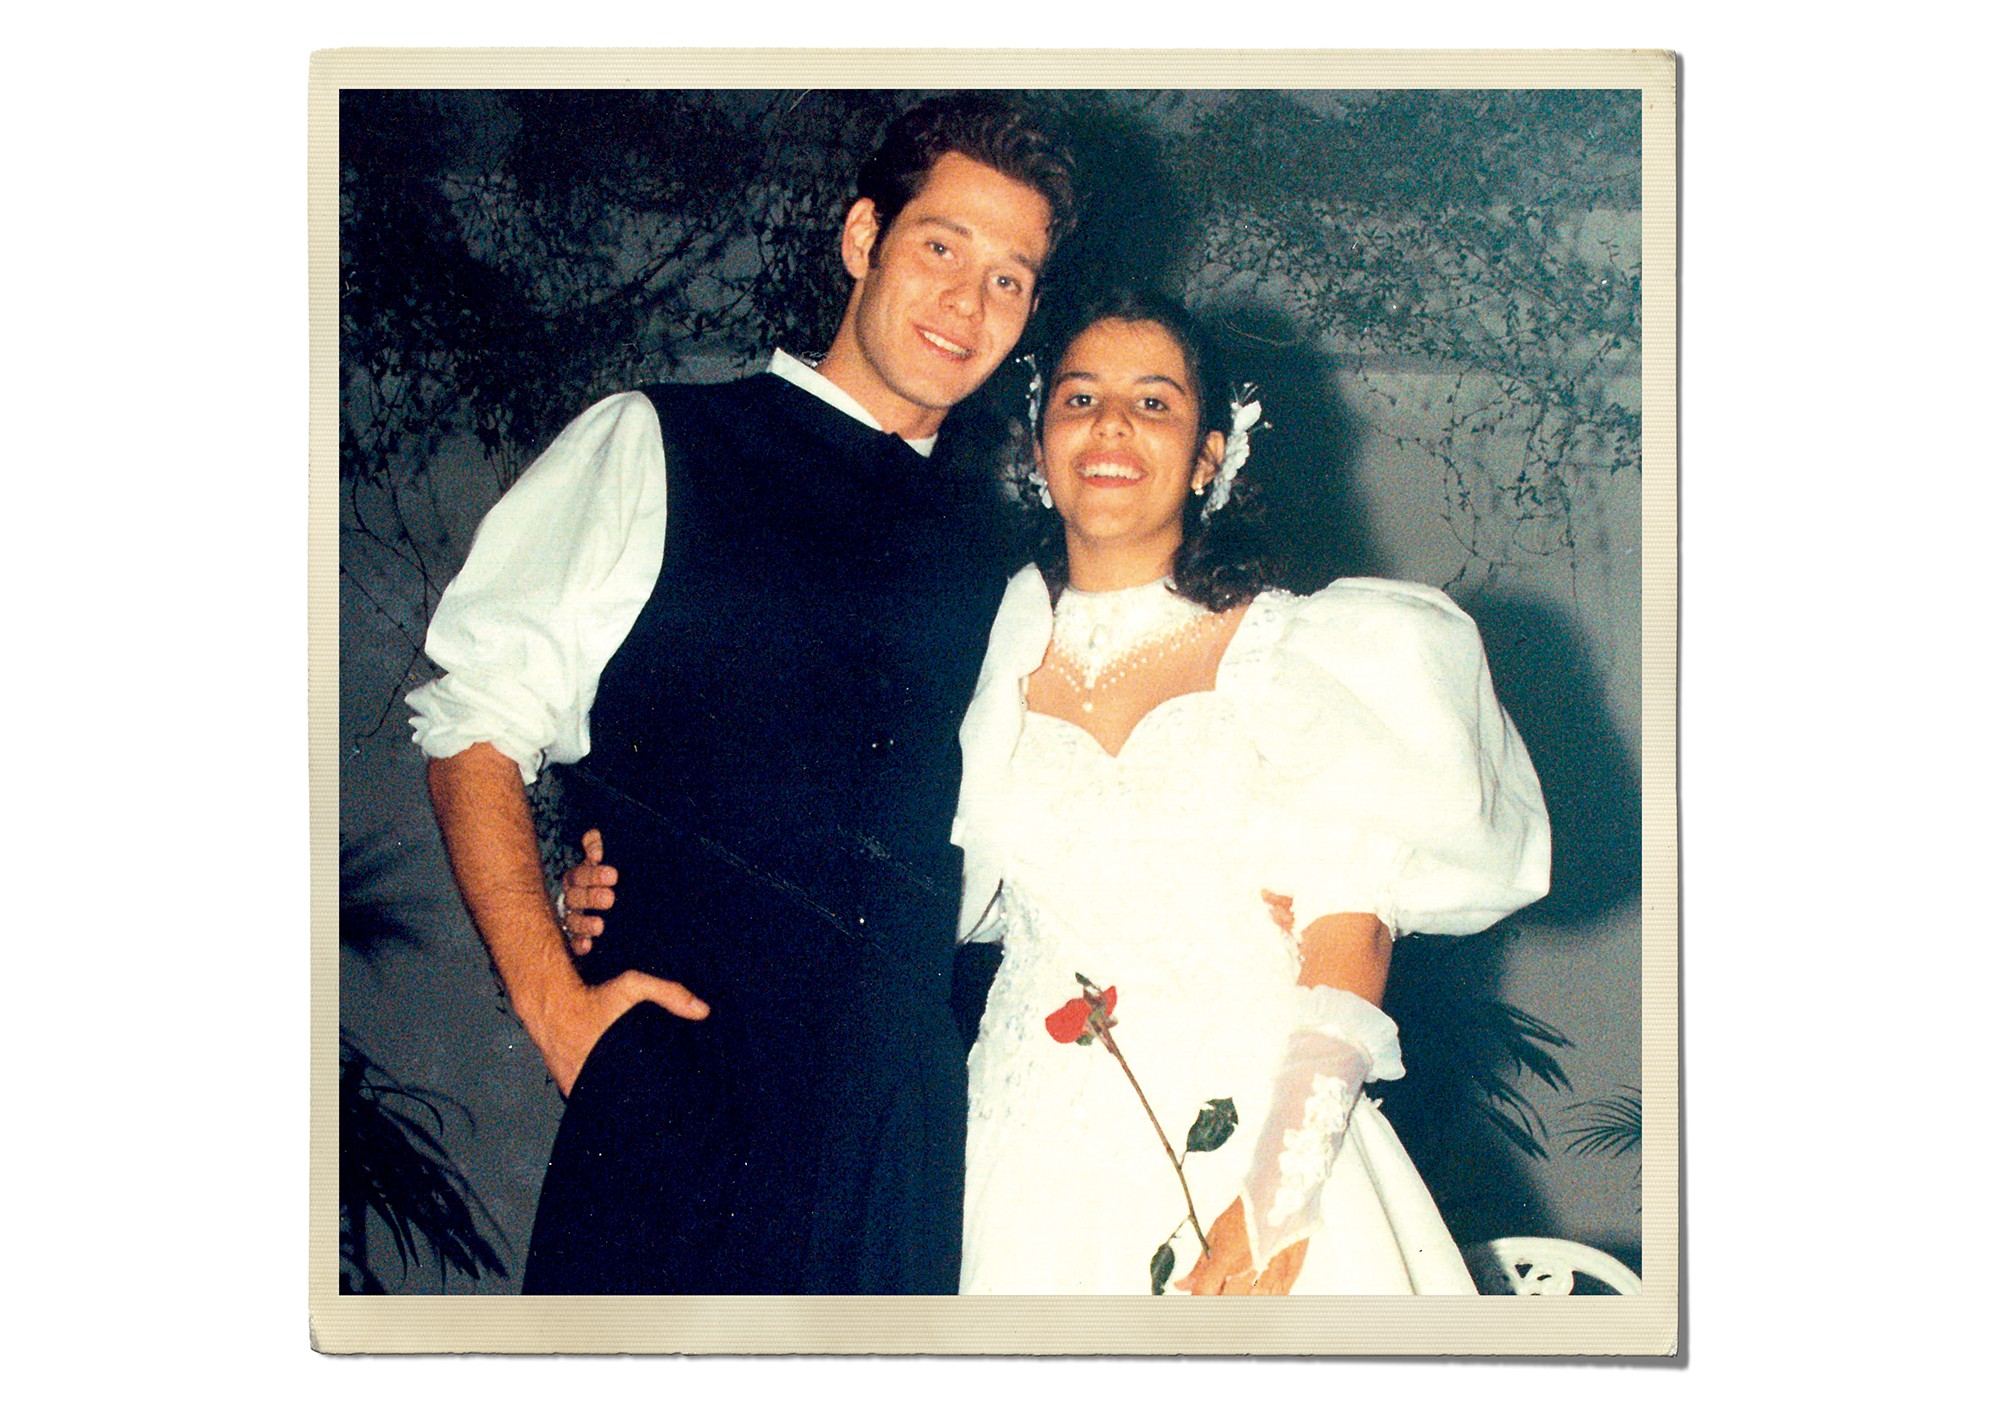 Quando éramos príncipes: O ator Nico Puig com Erika Duarte no baile que abalou a cidade de Vassouras (RJ) em 1994 (Foto: acervo pessoal)